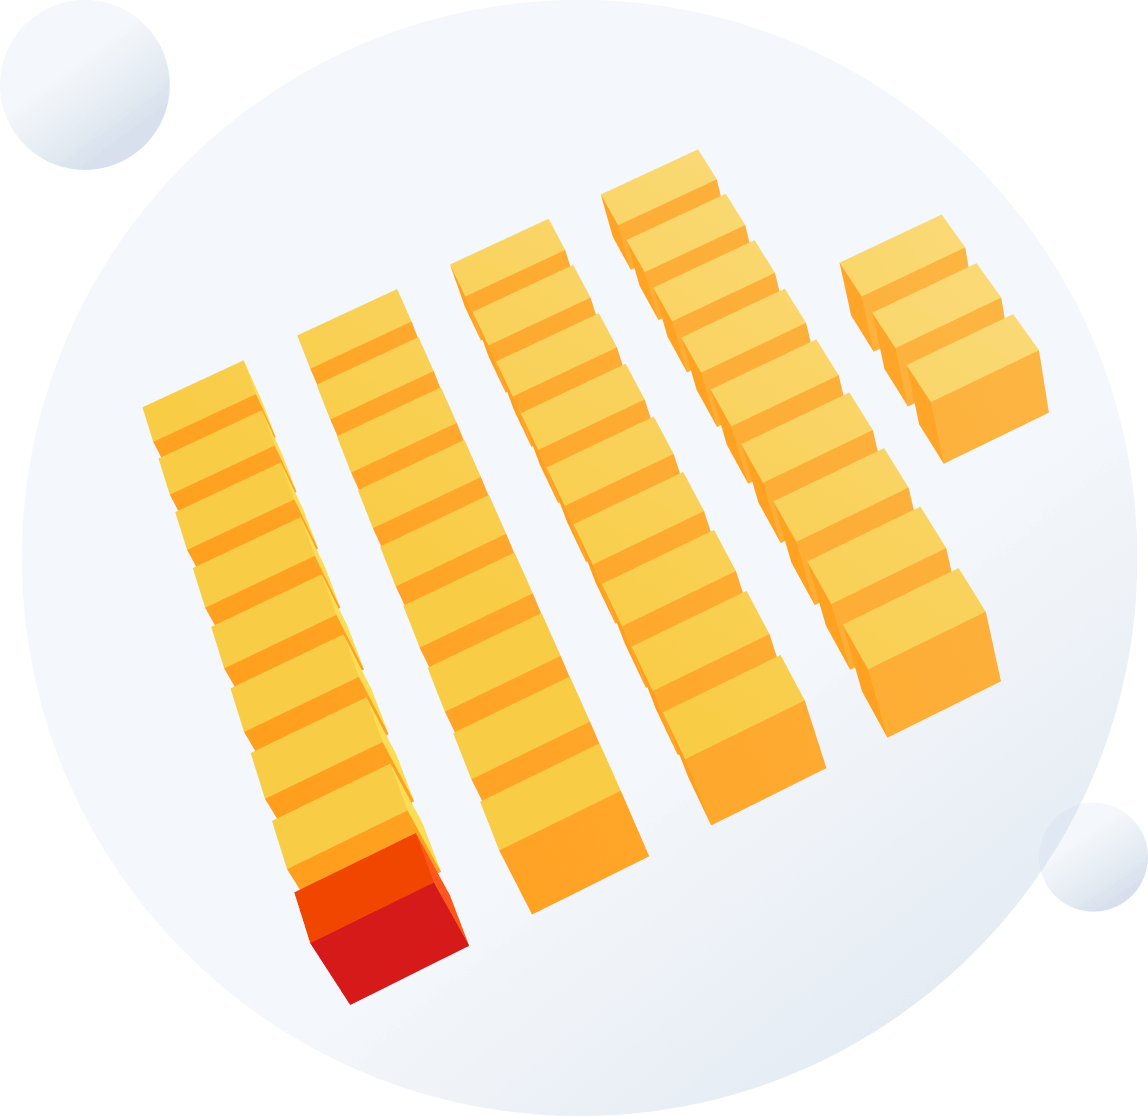 СУБД ClickHouse используется для обработки триллионов записей и петабайтов данных в сервисах Яндекса — Метрике, Директе, Маркете, Почте, AdFox, Вебмастере.